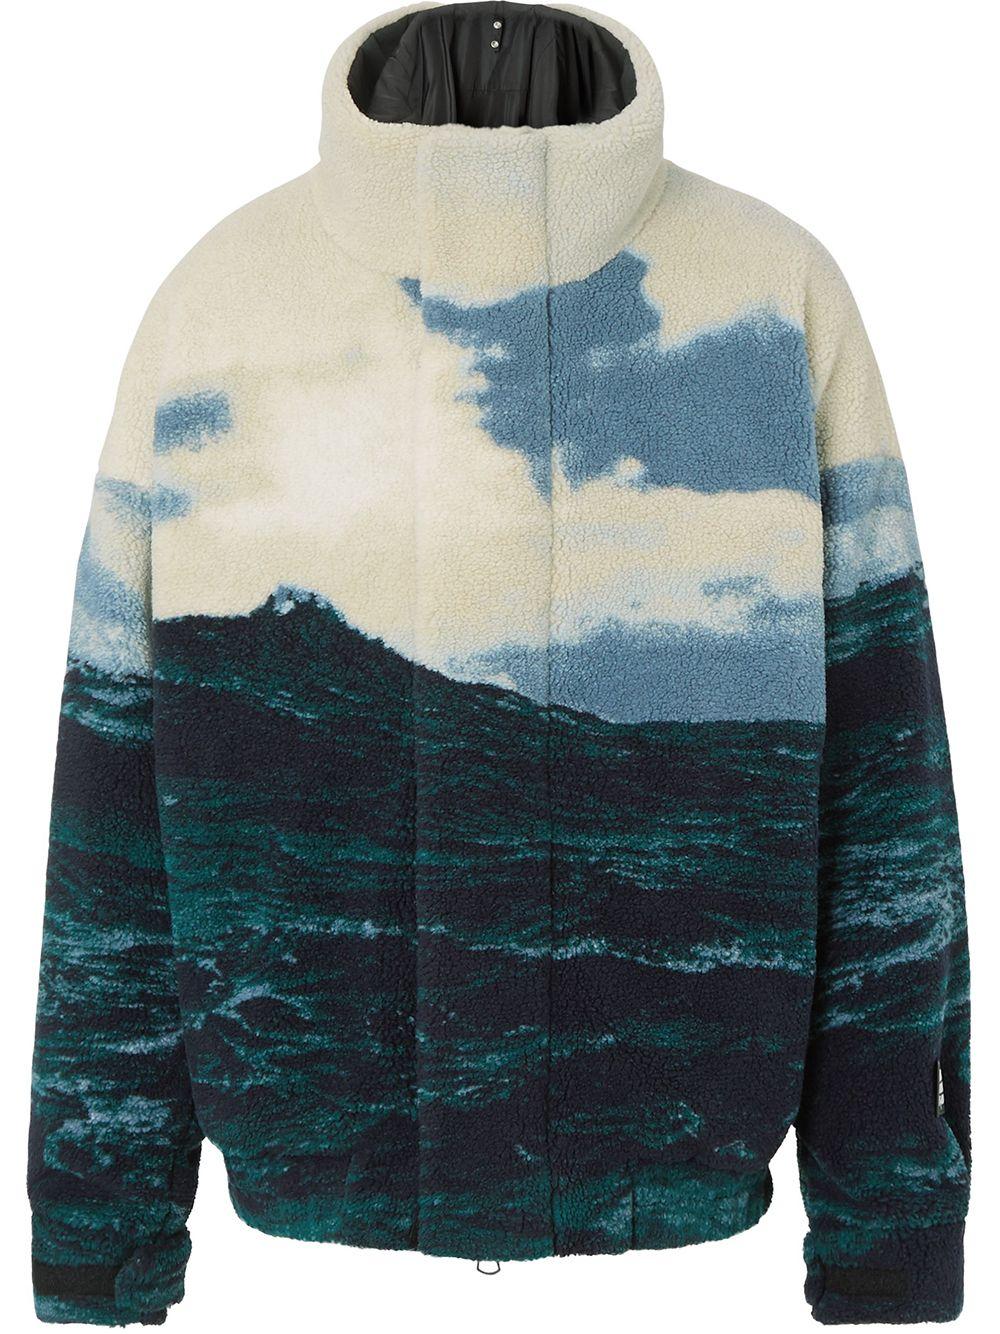 Burberry Sea Print Fleece Jacket for Men